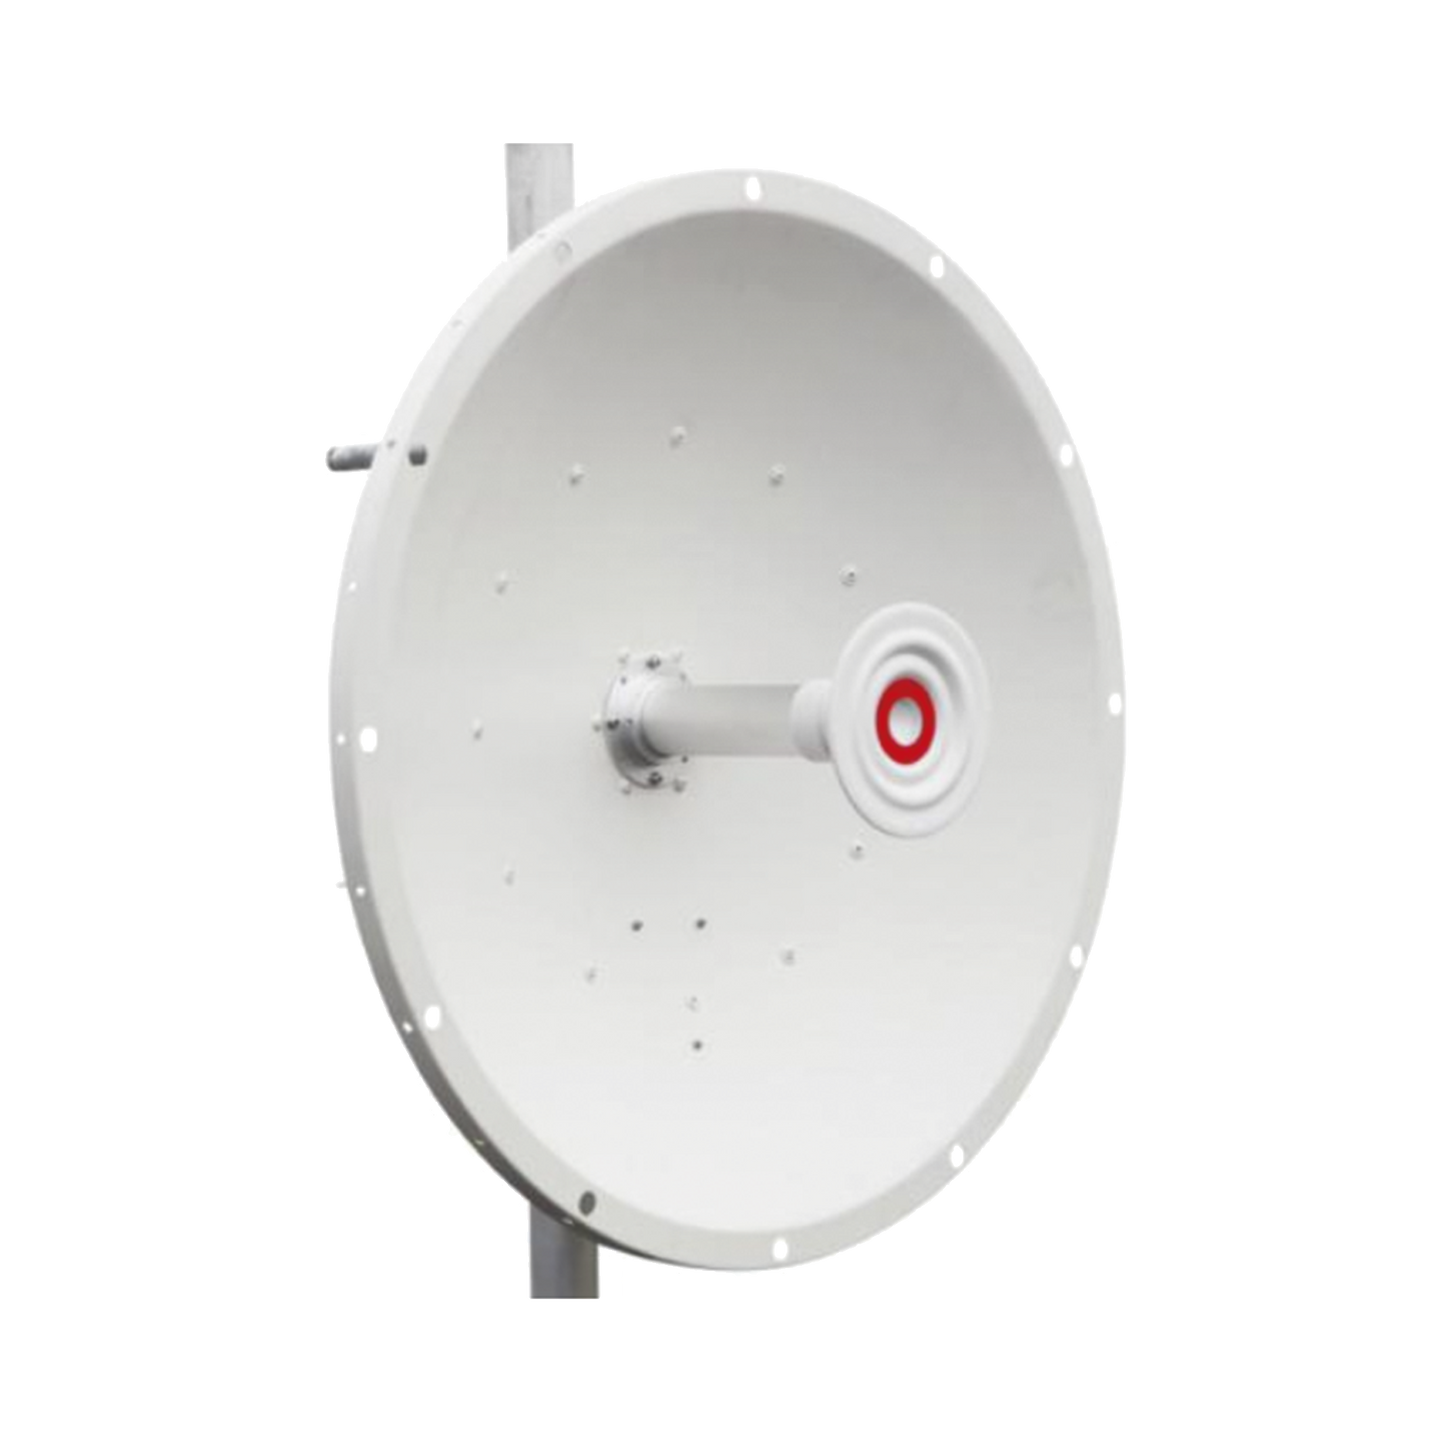 Antena direccional de 2ft, 5.1 a 7.1 GHz, Ganancia 30 dBi, Conectores N-hembra, Polarización doble, incluye montaje para torre o mástil